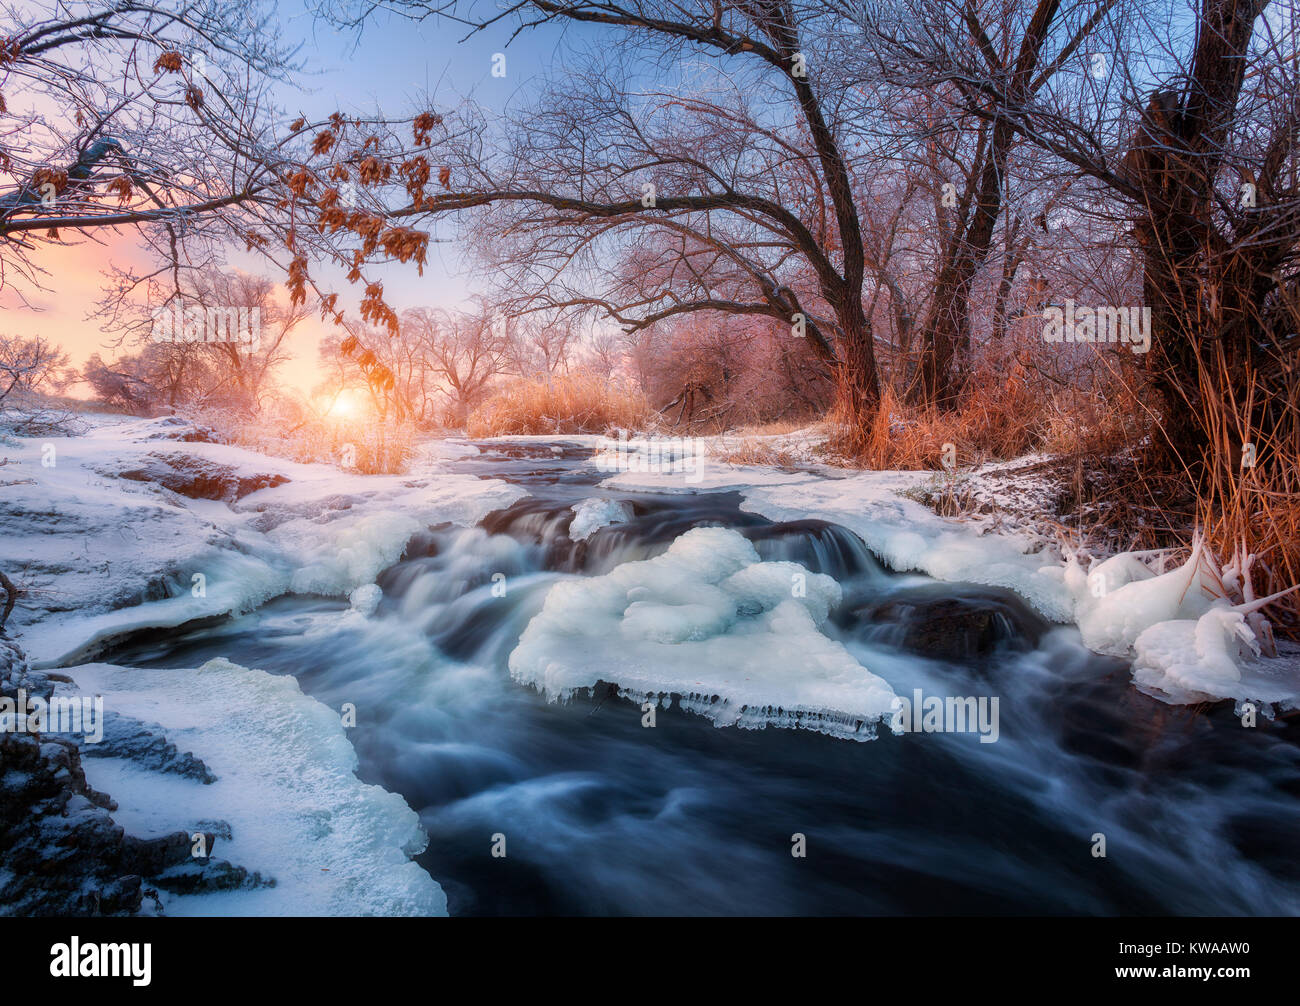 Foresta di inverno con il maestoso fiume al tramonto. Paesaggio invernale con alberi innevati, ghiaccio, bellissimo fiume congelato, boccole nevoso e colorati di cielo nel crepuscolo. Blurre Foto Stock